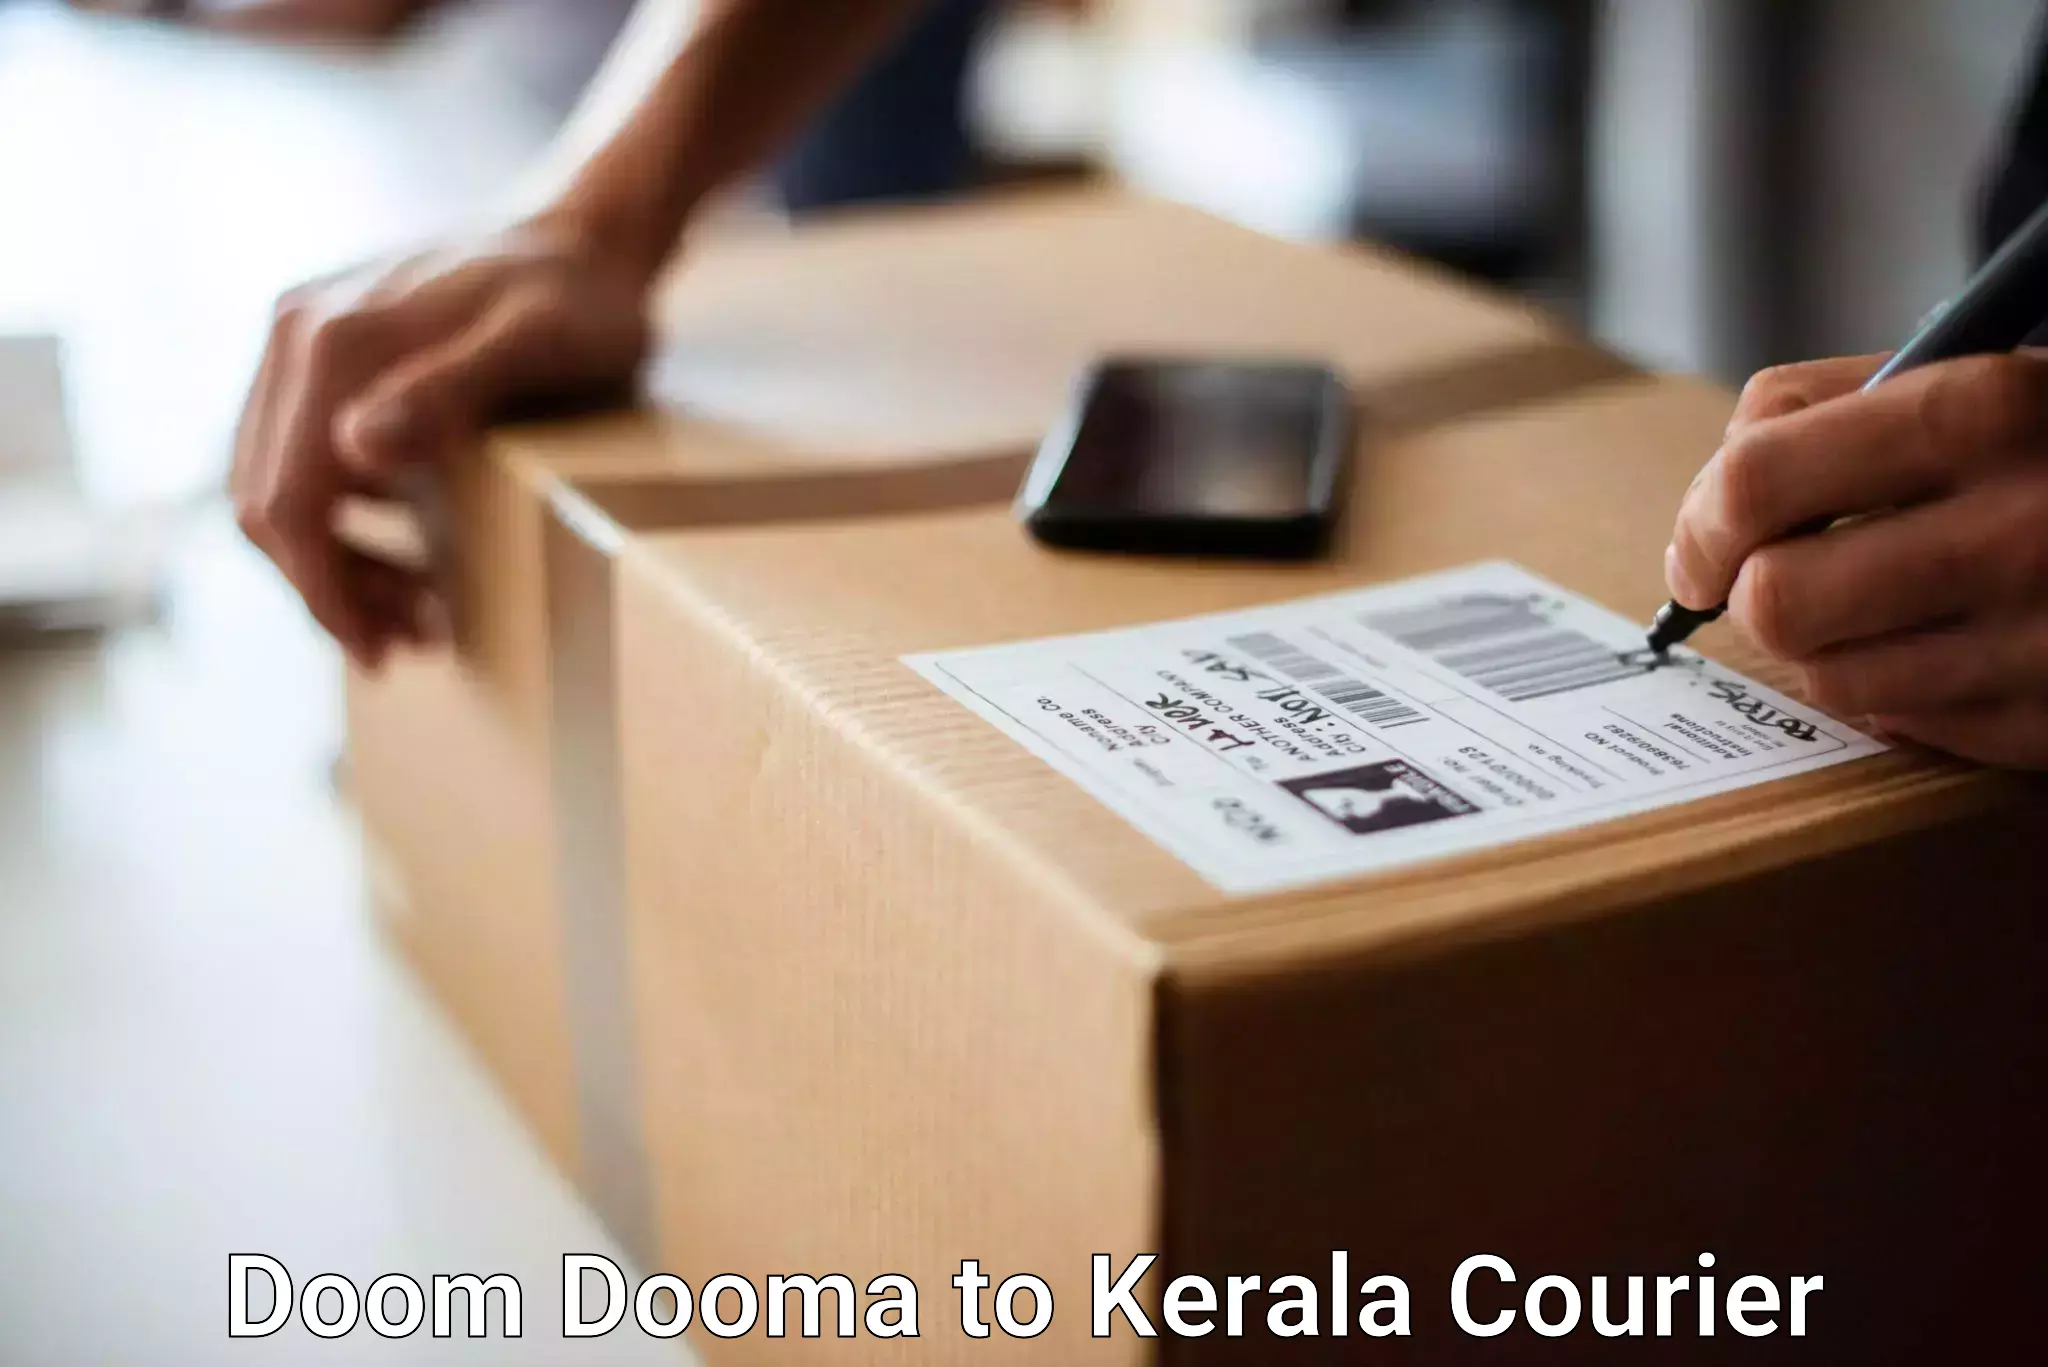 Baggage relocation service Doom Dooma to Perambra